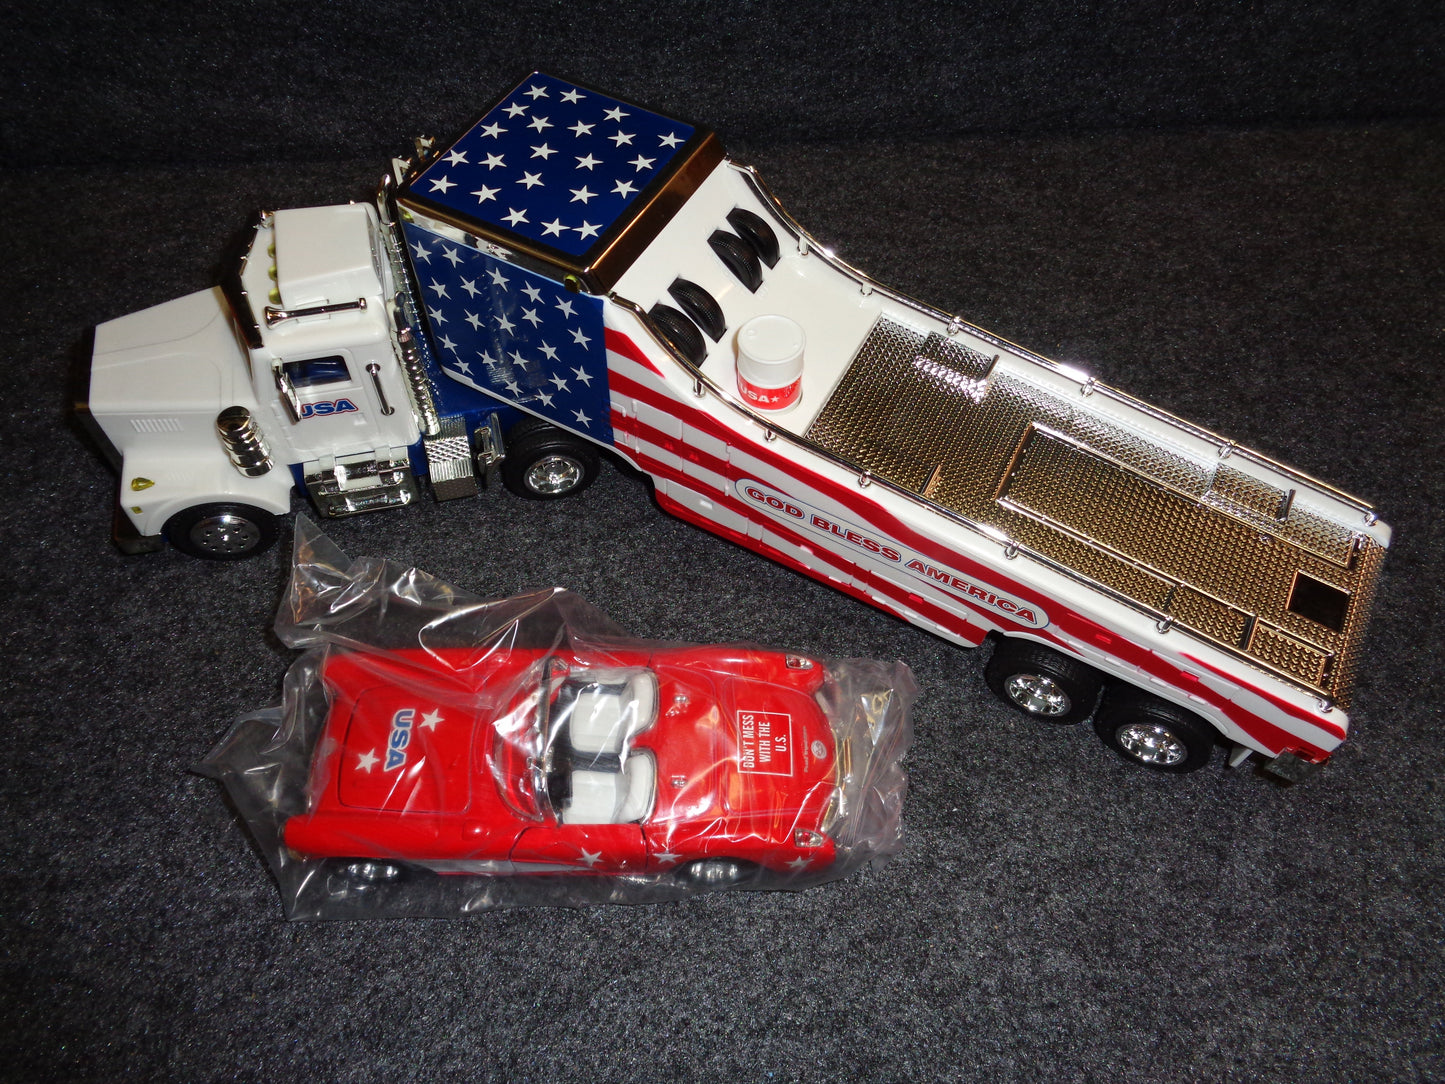 USA Car Carrier Truck